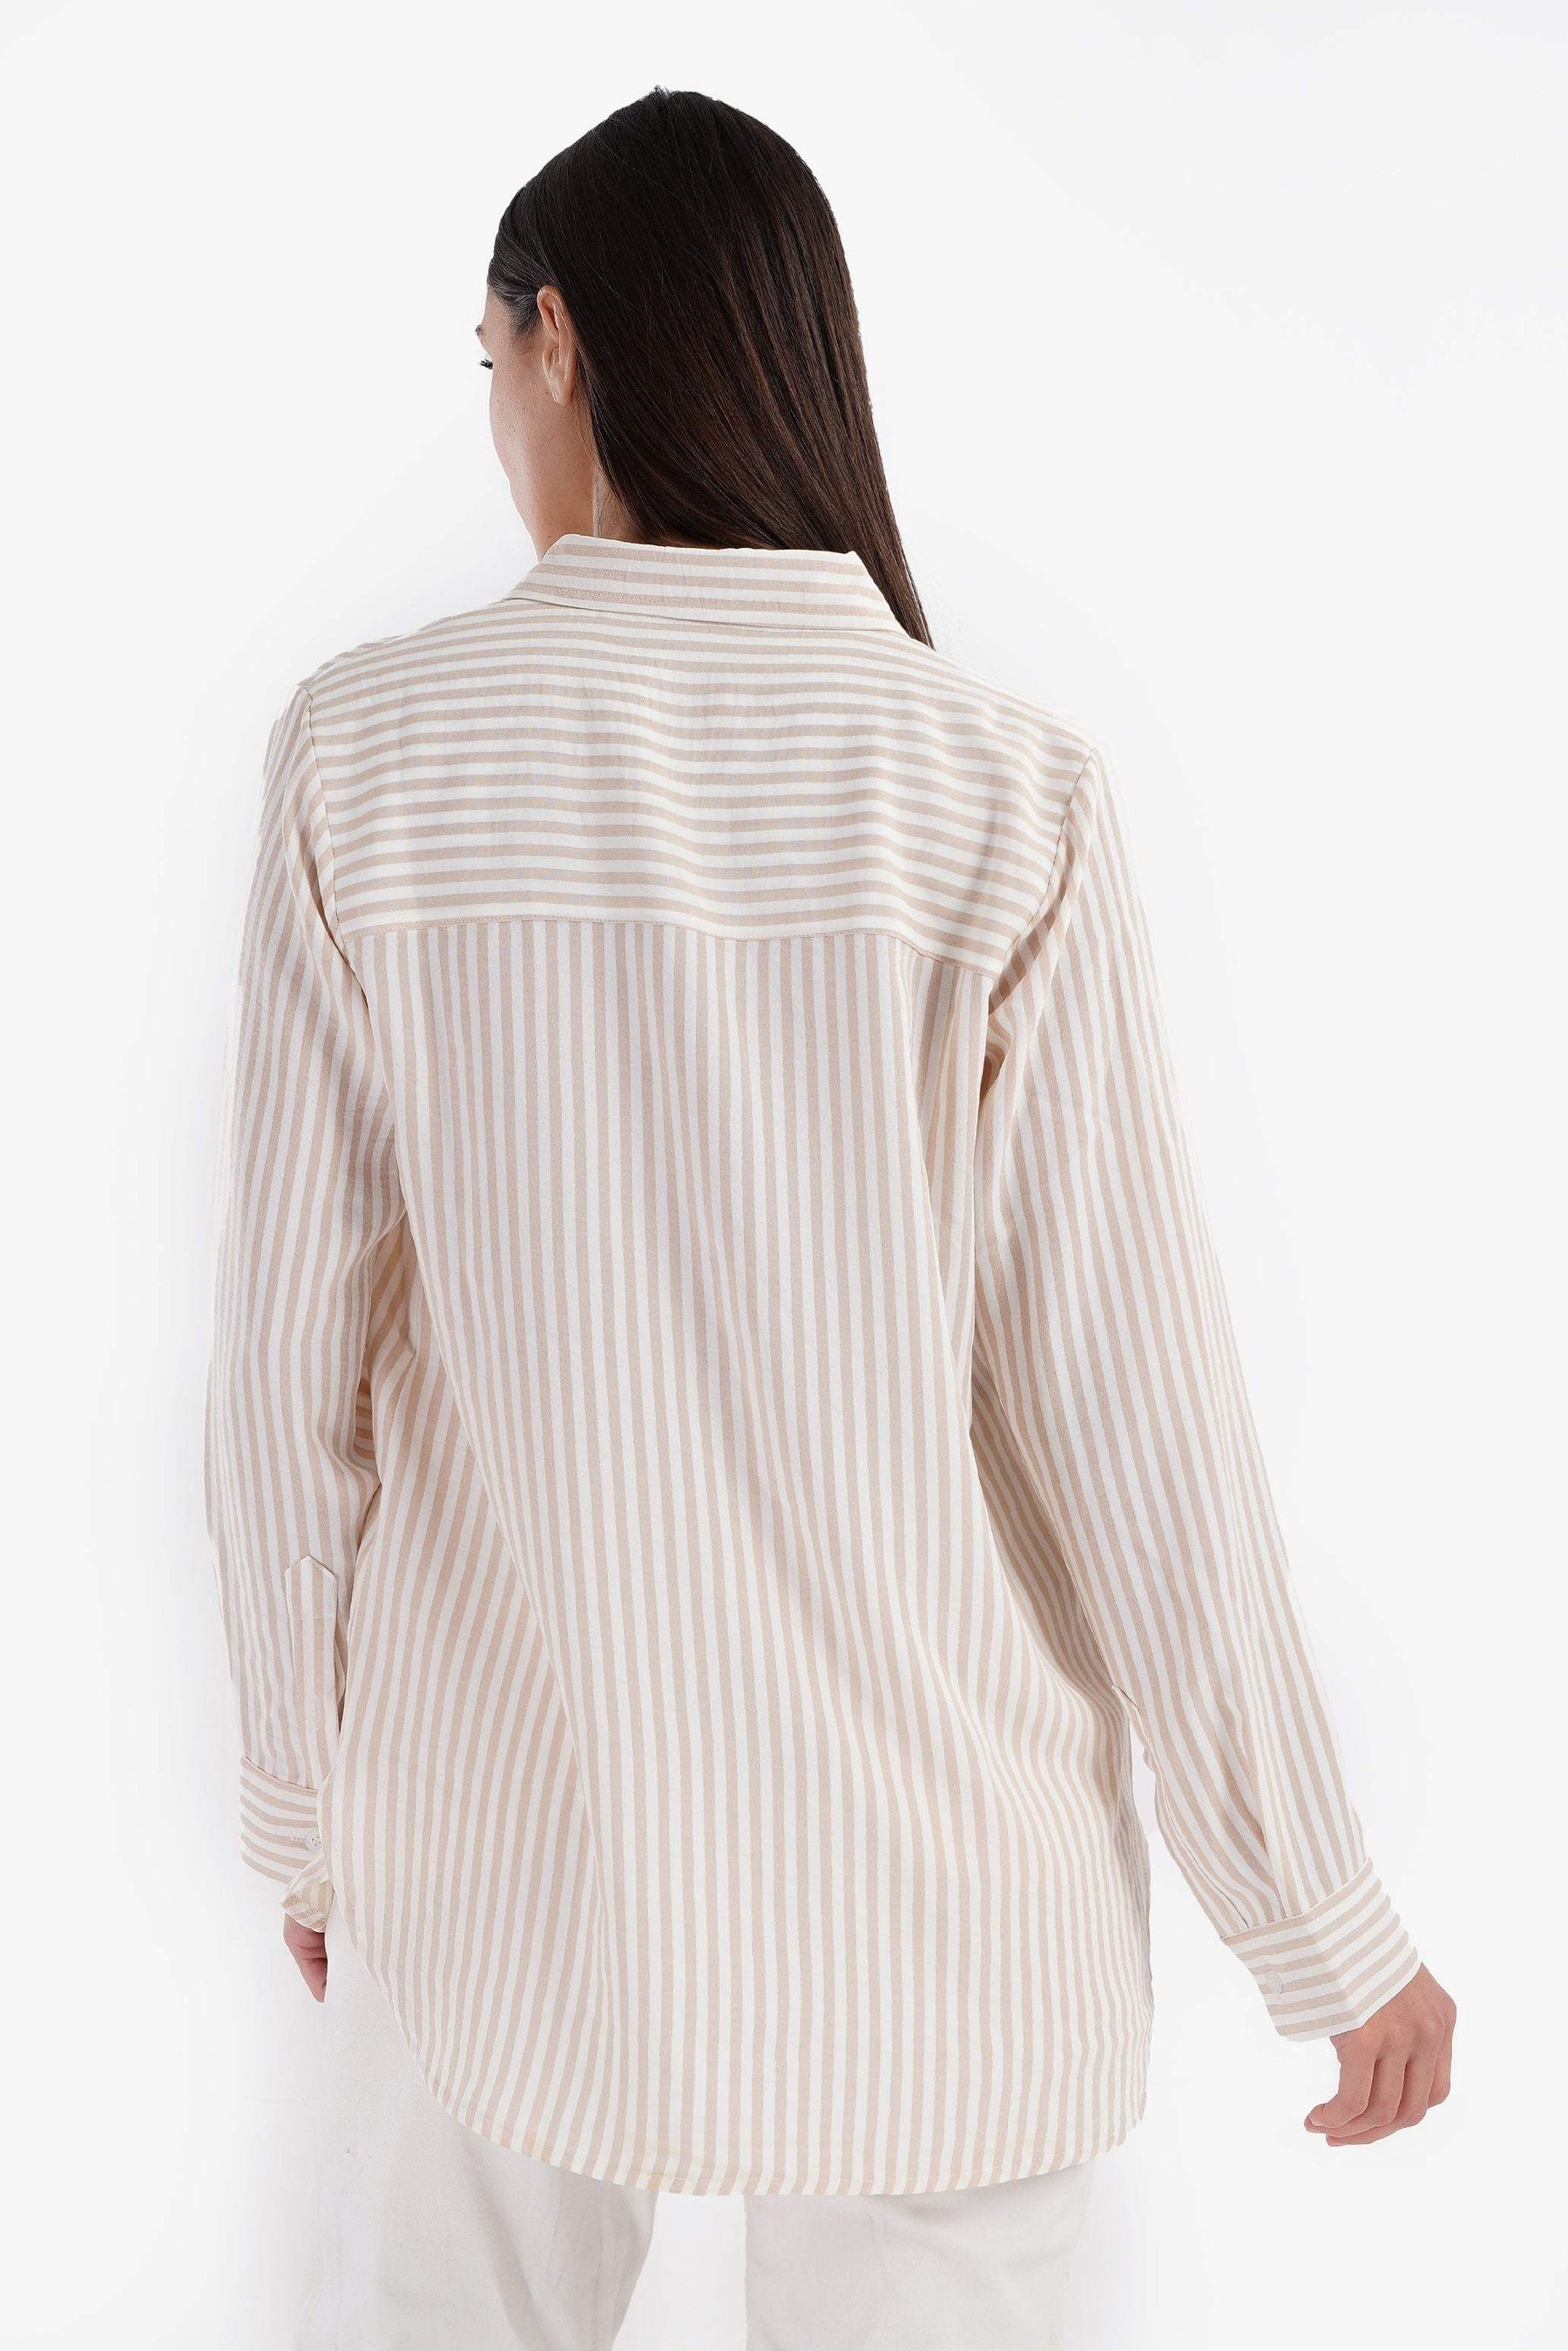 Collared Striped Shirt - Carina - كارينا